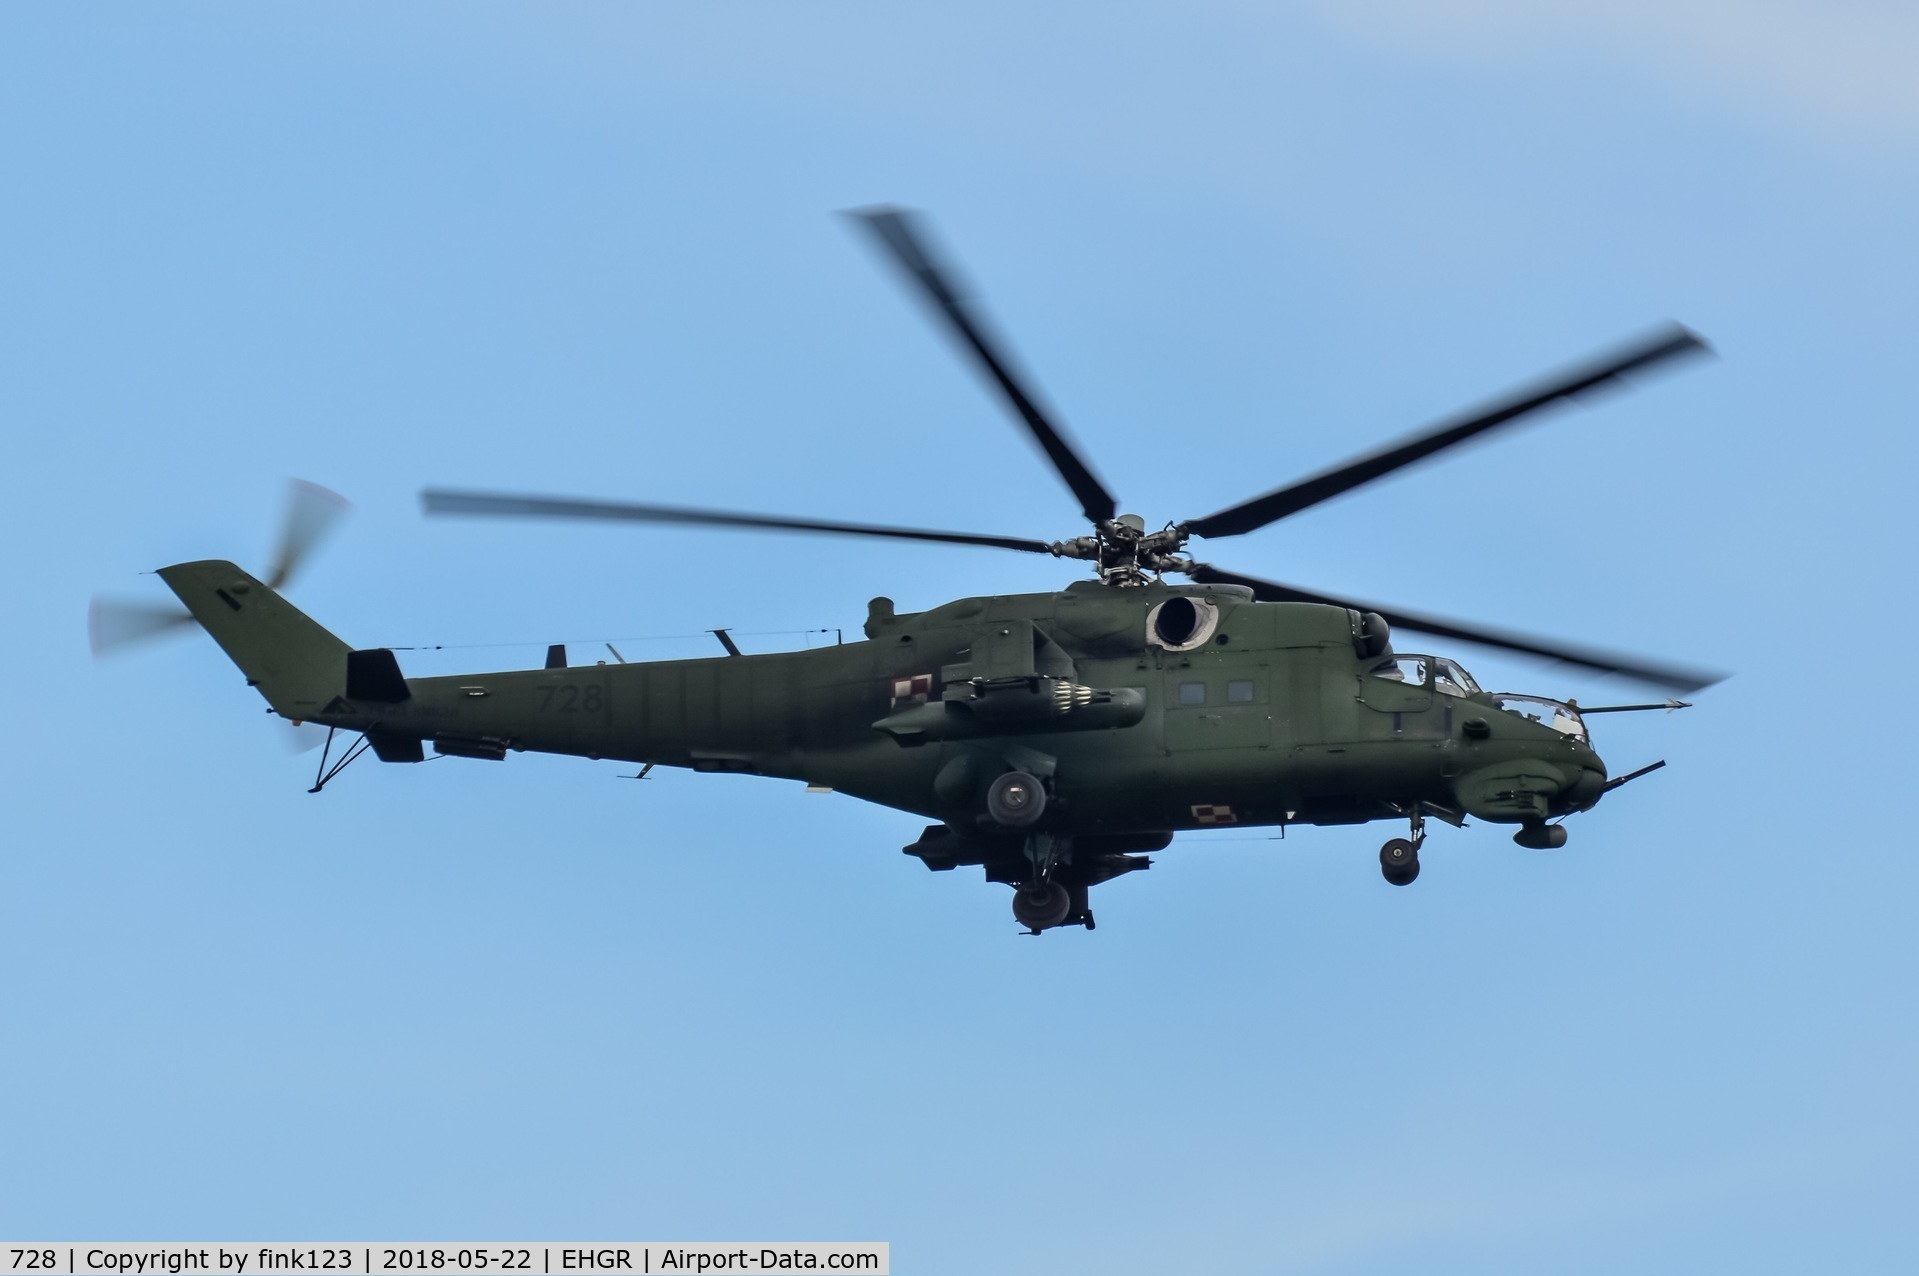 728, 1986 Mil Mi-24V Hind E C/N 410728, mi-24